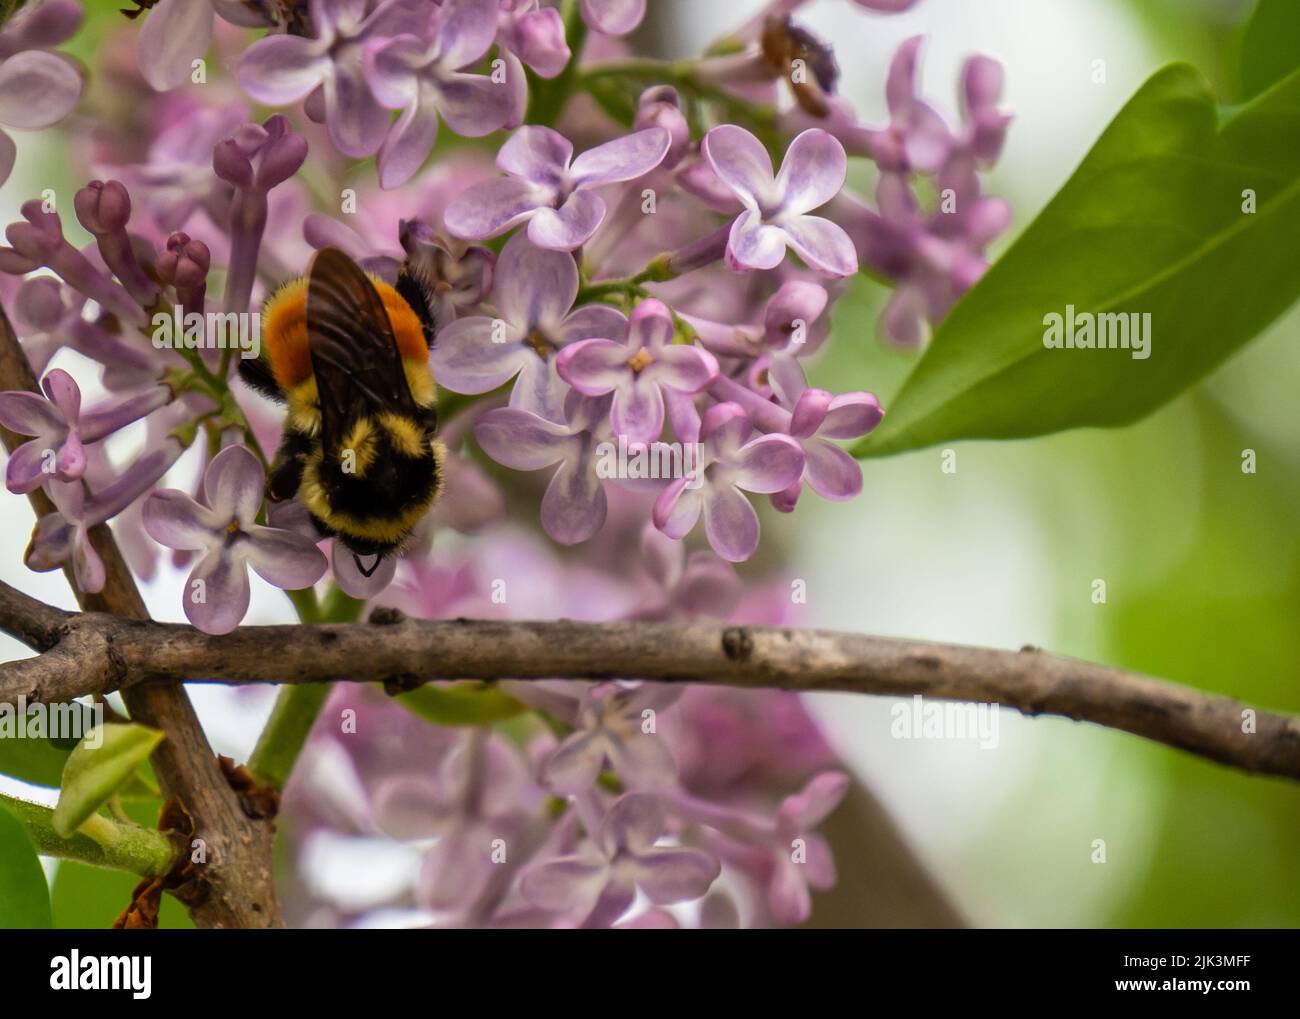 Primo piano di un bumblebee con cintura arancione che raccoglie nettare dai fiori rosa su un albero di lilla che sta crescendo in un giardino fiorito in un caldo giorno di primavera Foto Stock